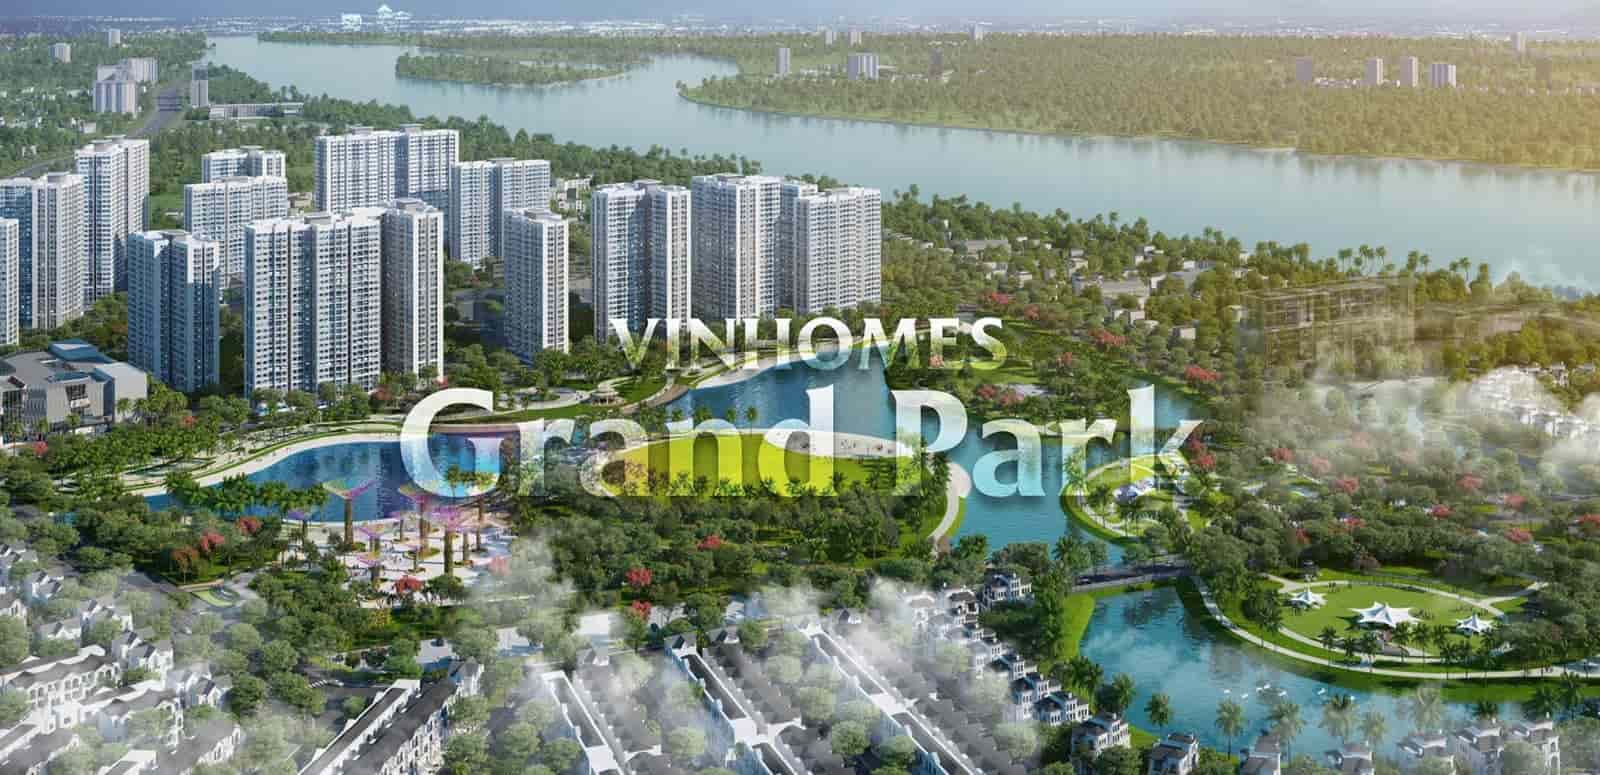 Vinhomes Grand Park – Khu đô thị thông minh đẳng cấp giữa Sài Gòn